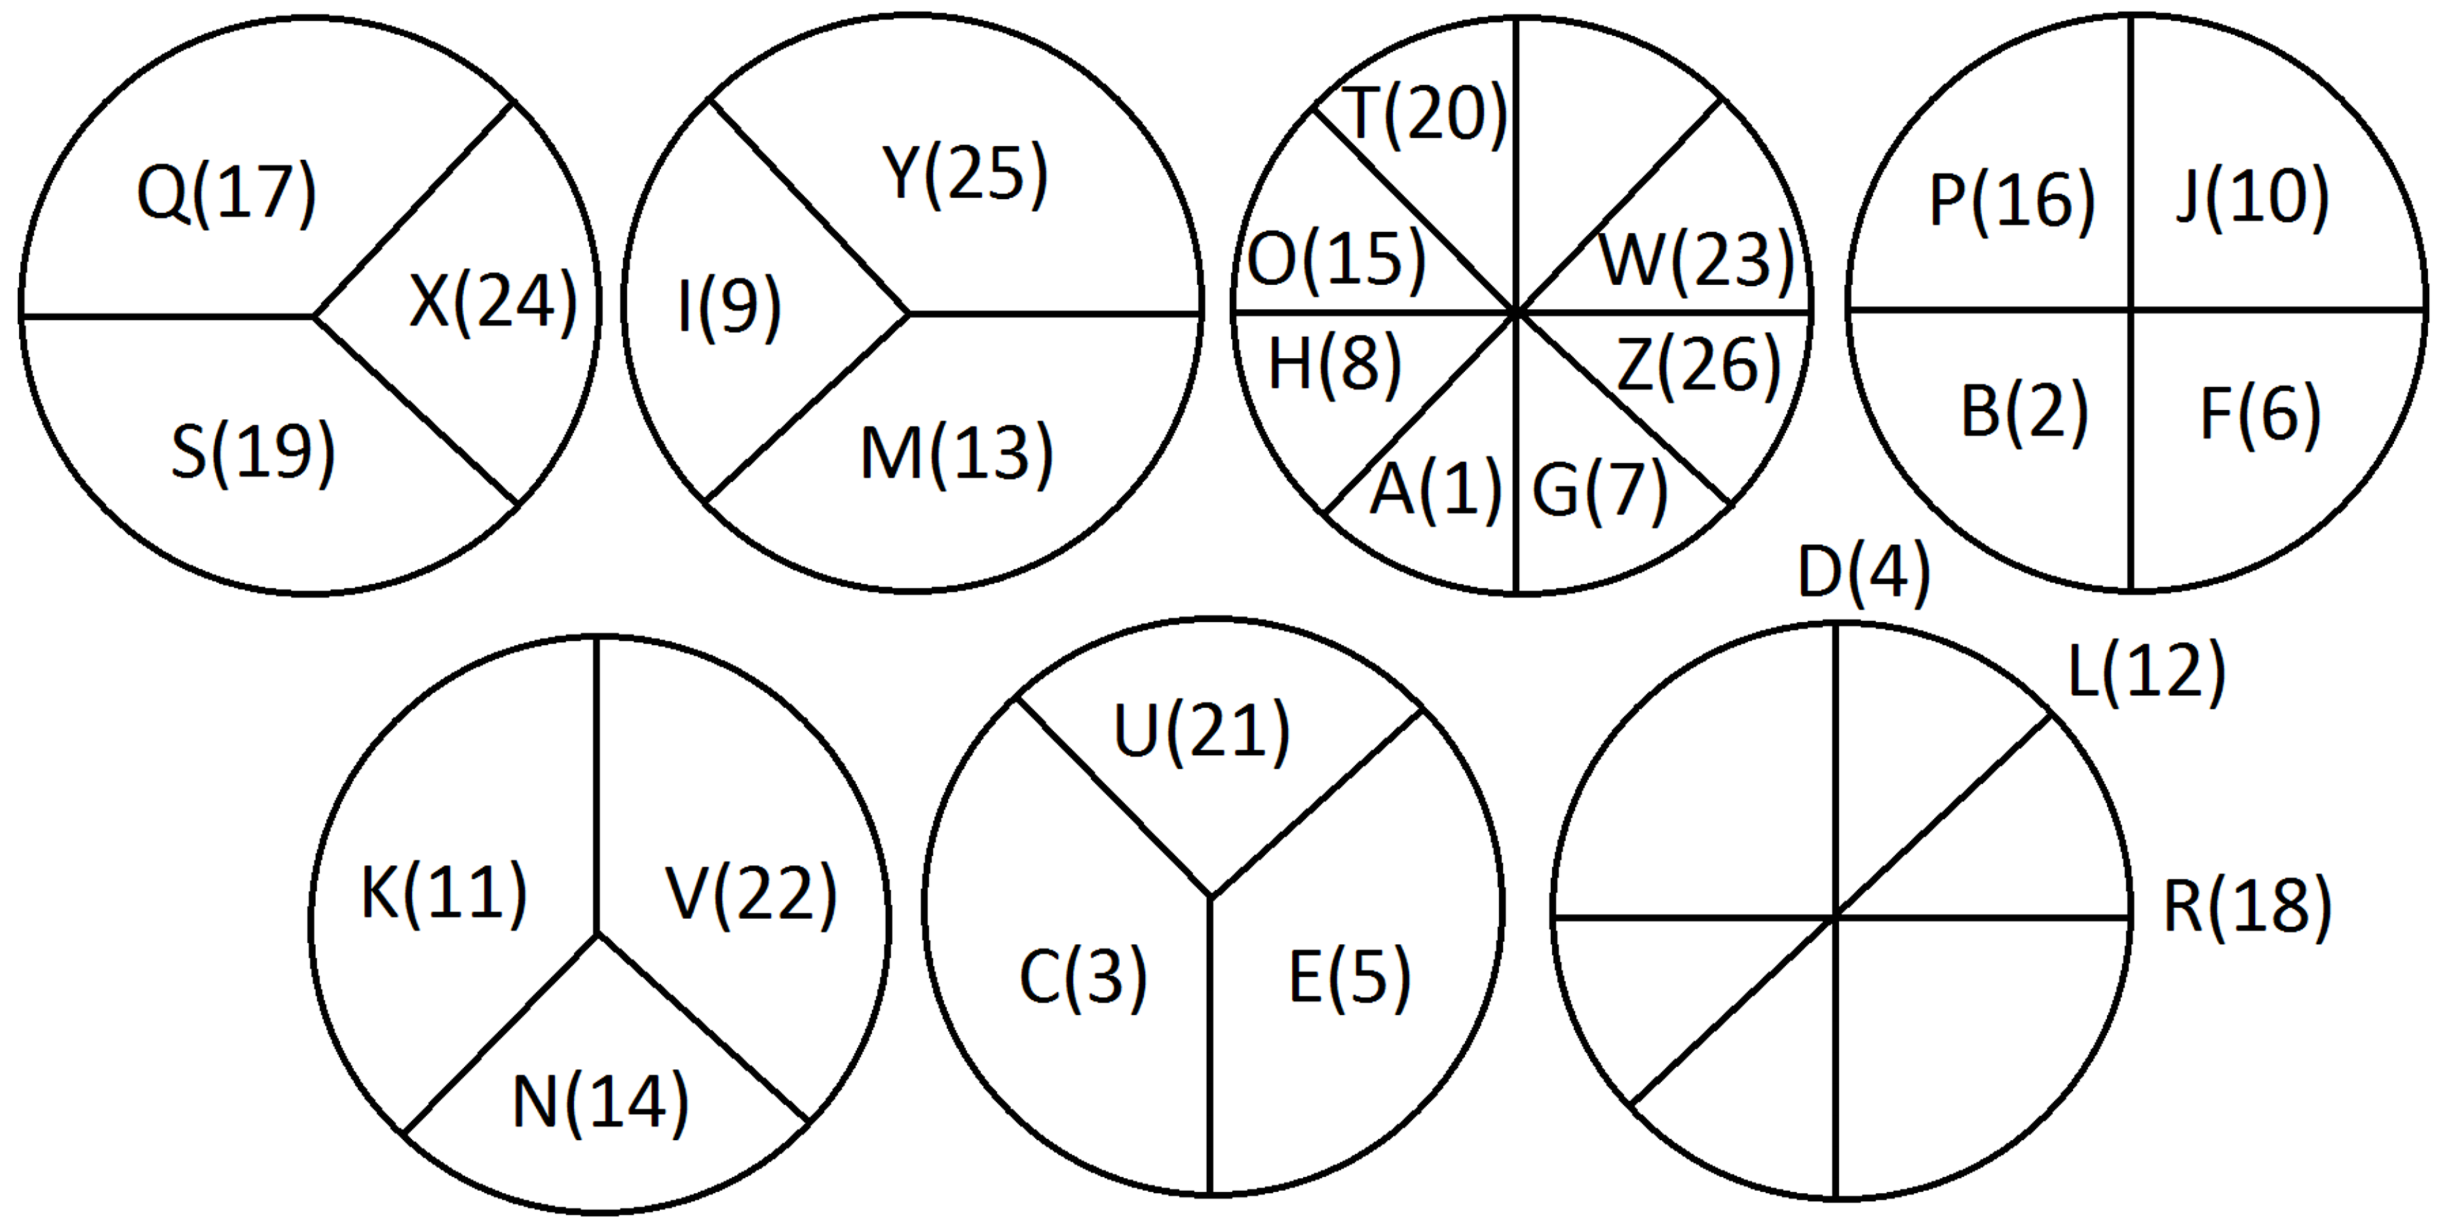 Machine generated alternative text: Q(17) x(24) s(19) Y(25) 1(9) M(13) (20) 0(15) P(16) (23) J(ło) z(26) A(l) G(7) D(4) U(21) v(22) c(3) N(14) L(12) R(18) 